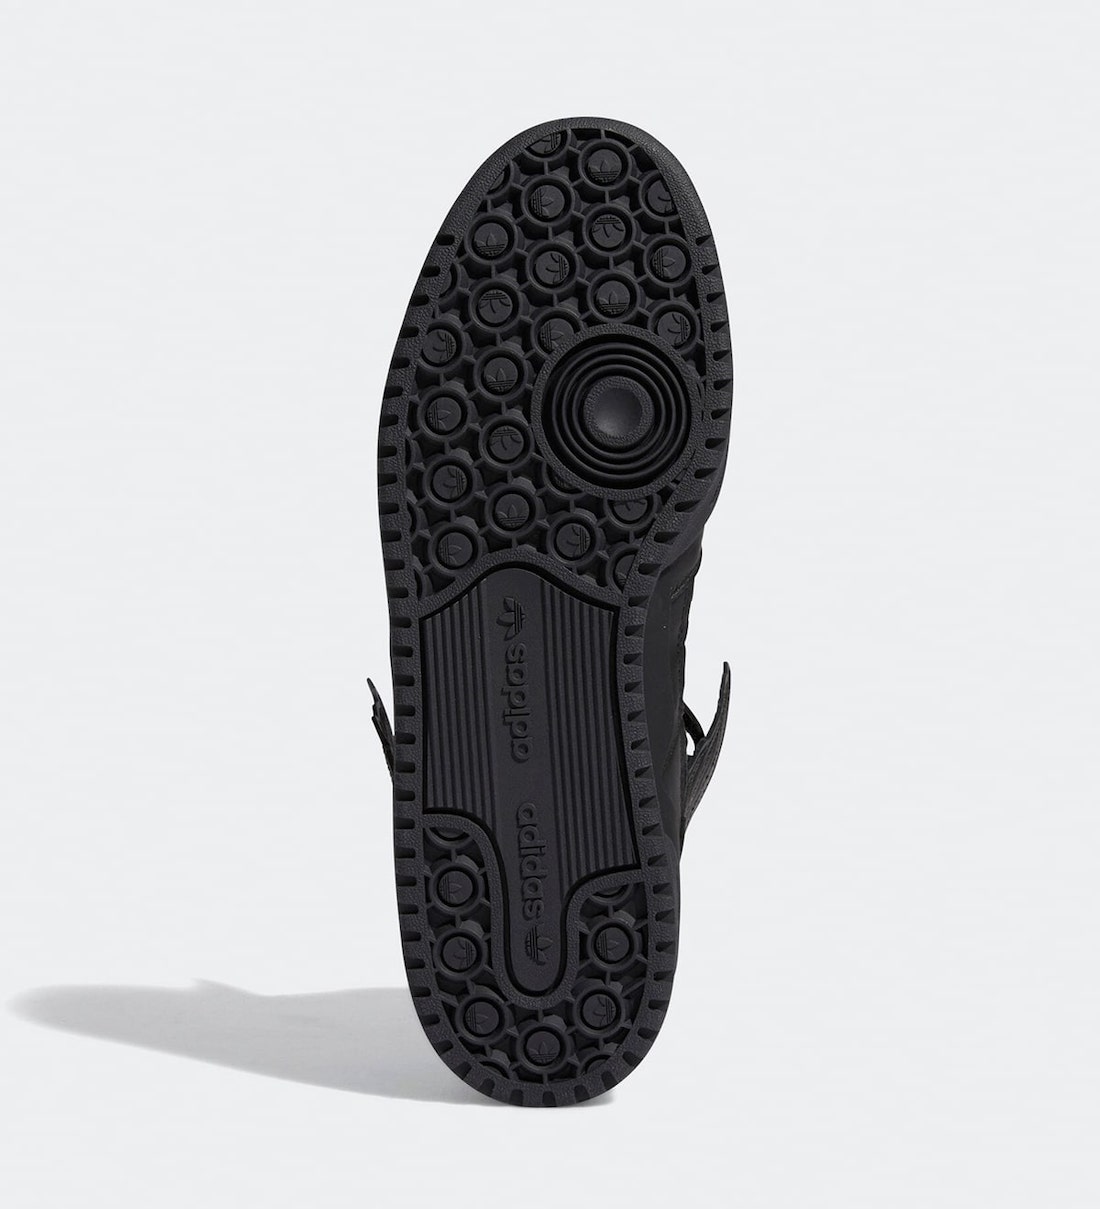 Jeremy Scott adidas Forum Hi Wings 4.0 Black GY4419 Release Date